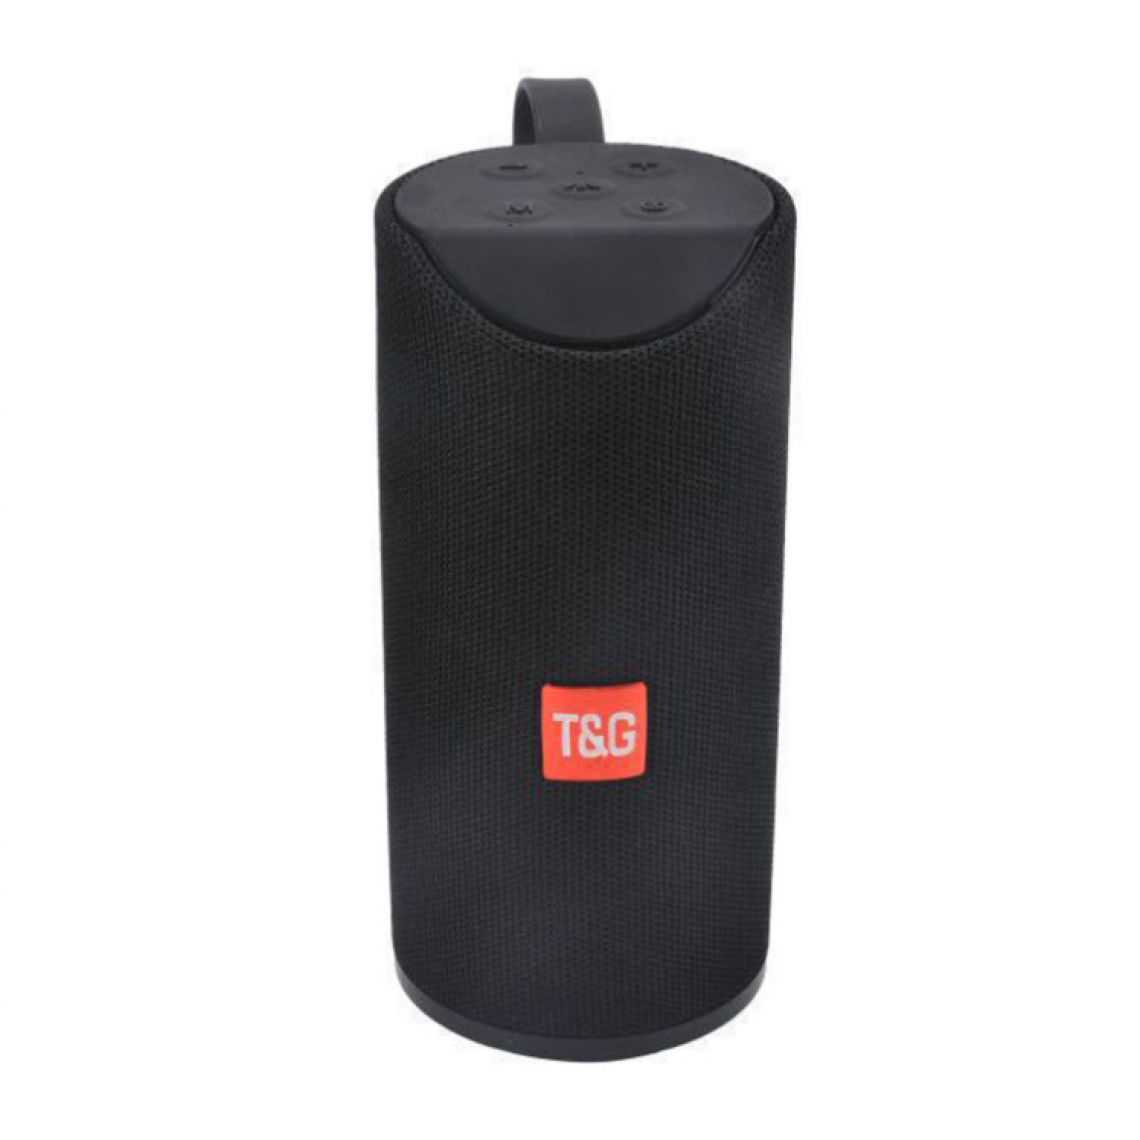 Universal - Haut-parleur Bluetooth Noir 5.0 Haut-parleur Portable Outdoor Wireless Mini Column 3D Stéréo Musique Surround Support FM TF Card Bass Box |(Le noir) - Enceinte PC